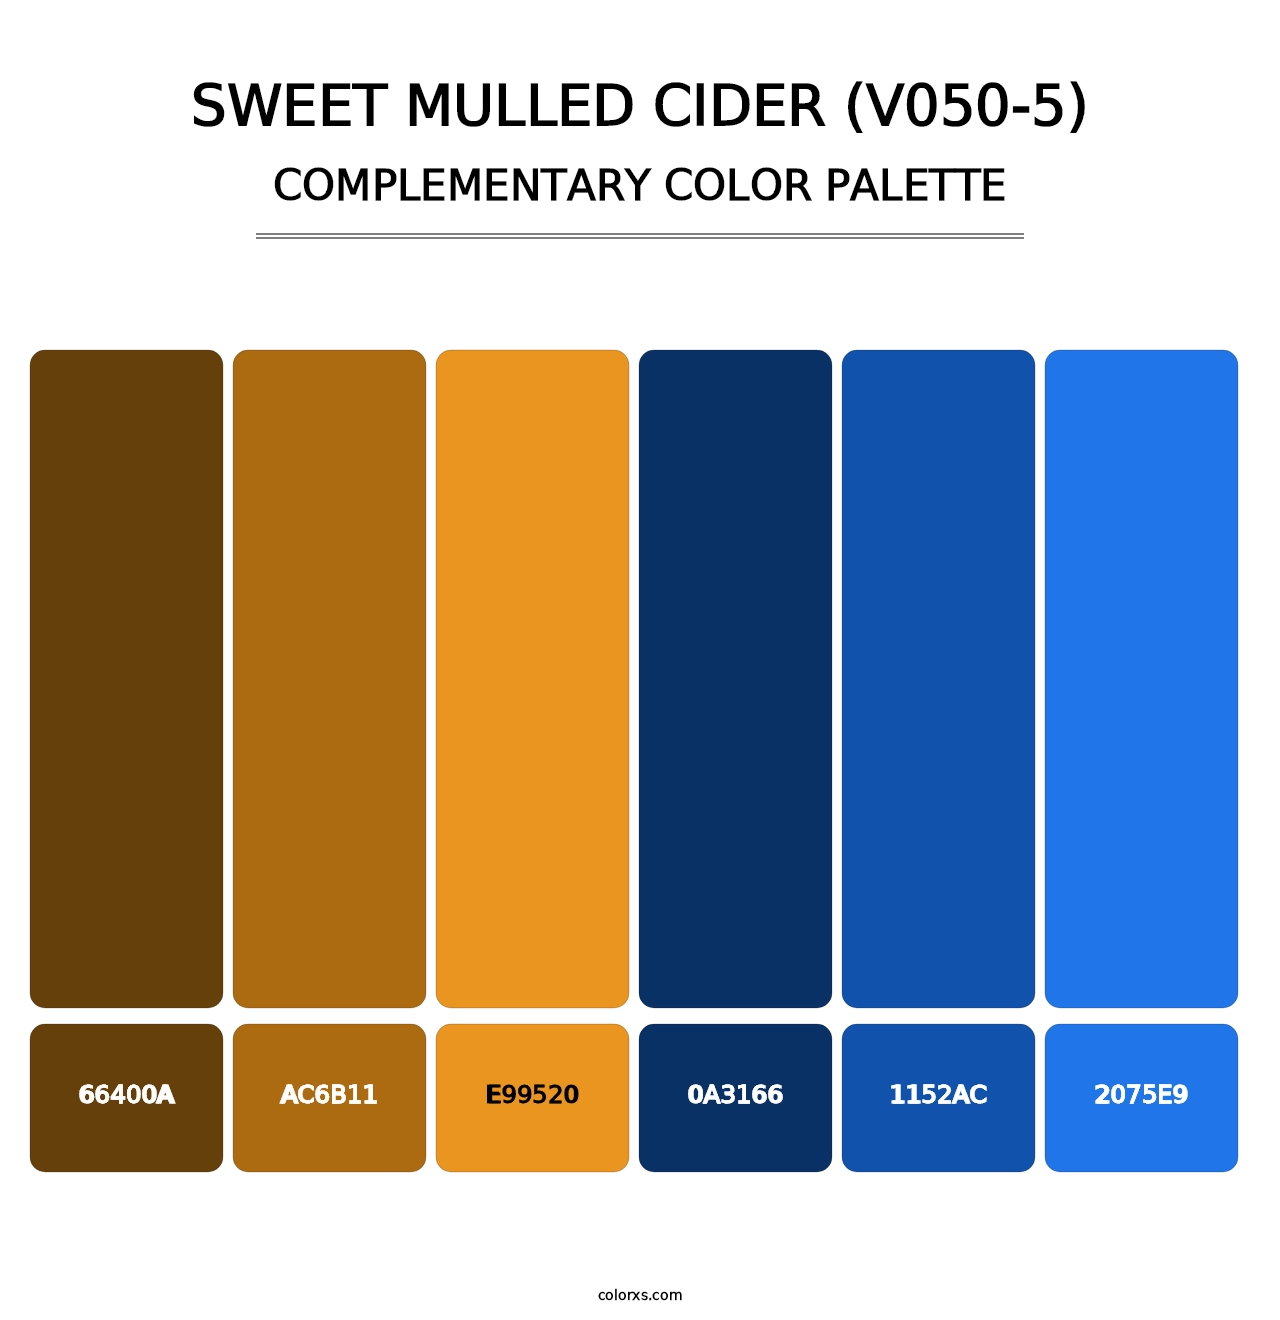 Sweet Mulled Cider (V050-5) - Complementary Color Palette